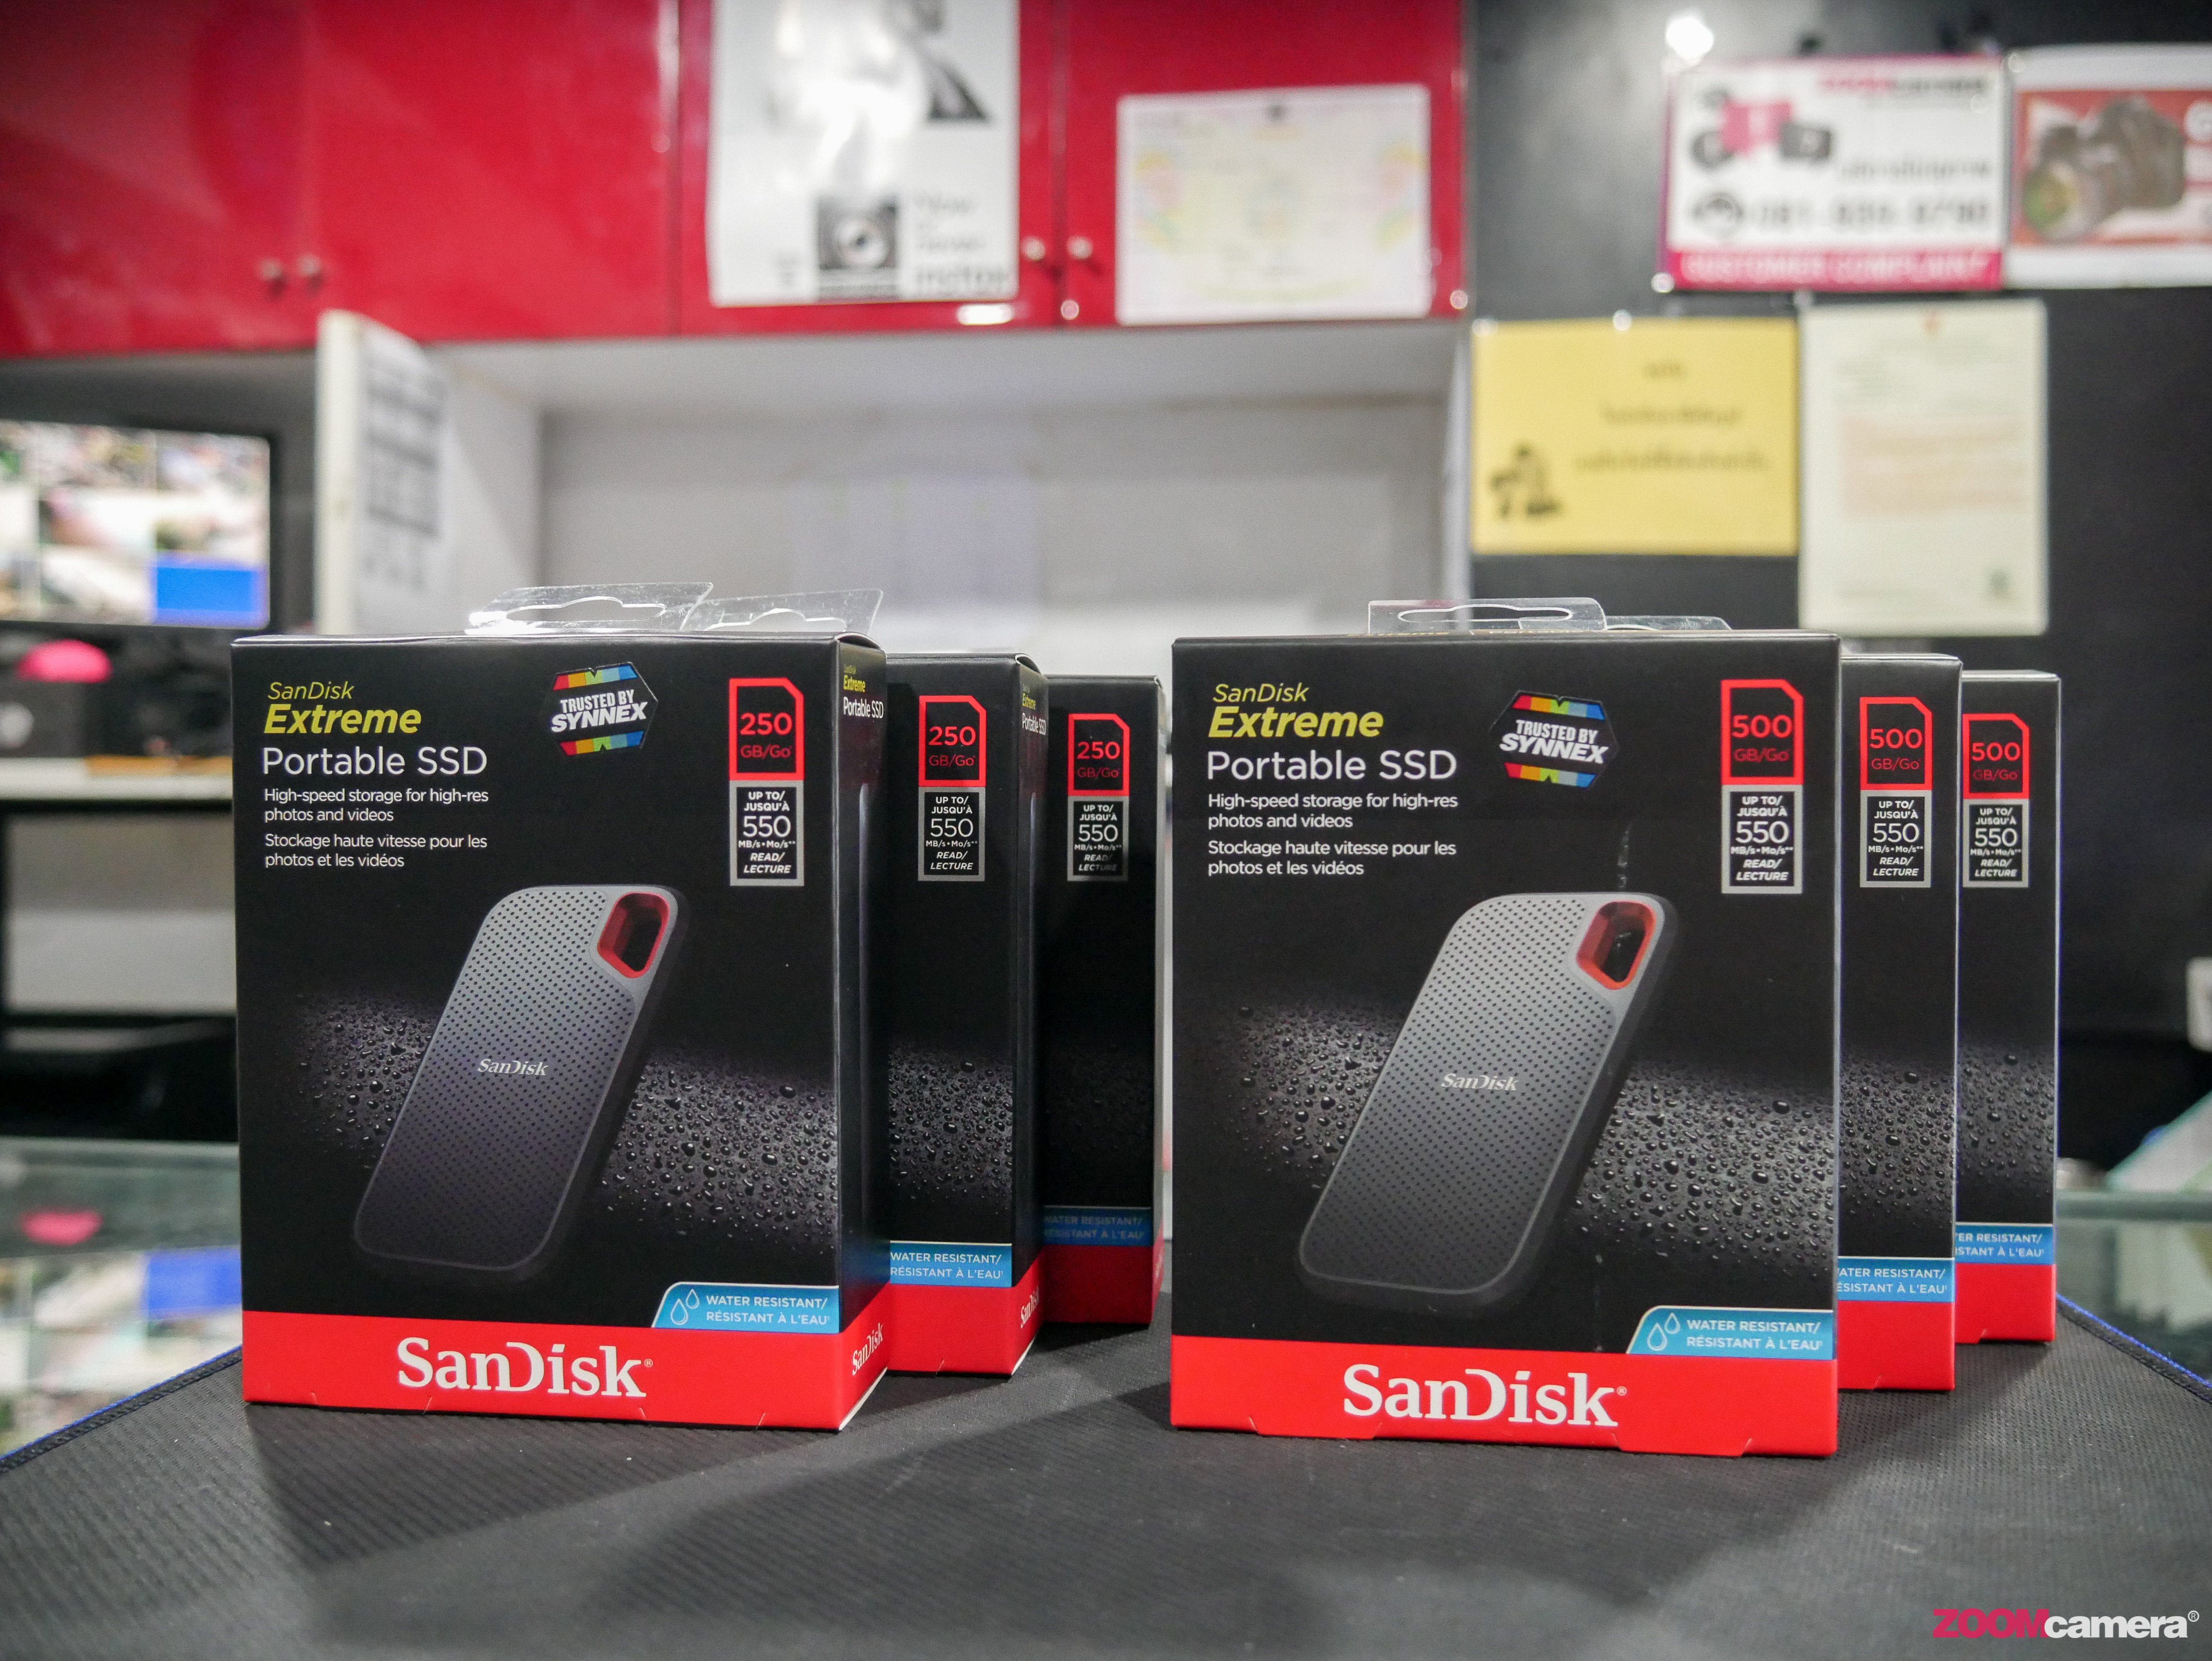 Hands On+ทดสอบ Sandisk Extreme Portable SSD ตัวใหม่ เร็ว แรง มั่นใจทุกการเดินทาง นักถ่ายภาพสายท่องเที่ยวต้องโดน 